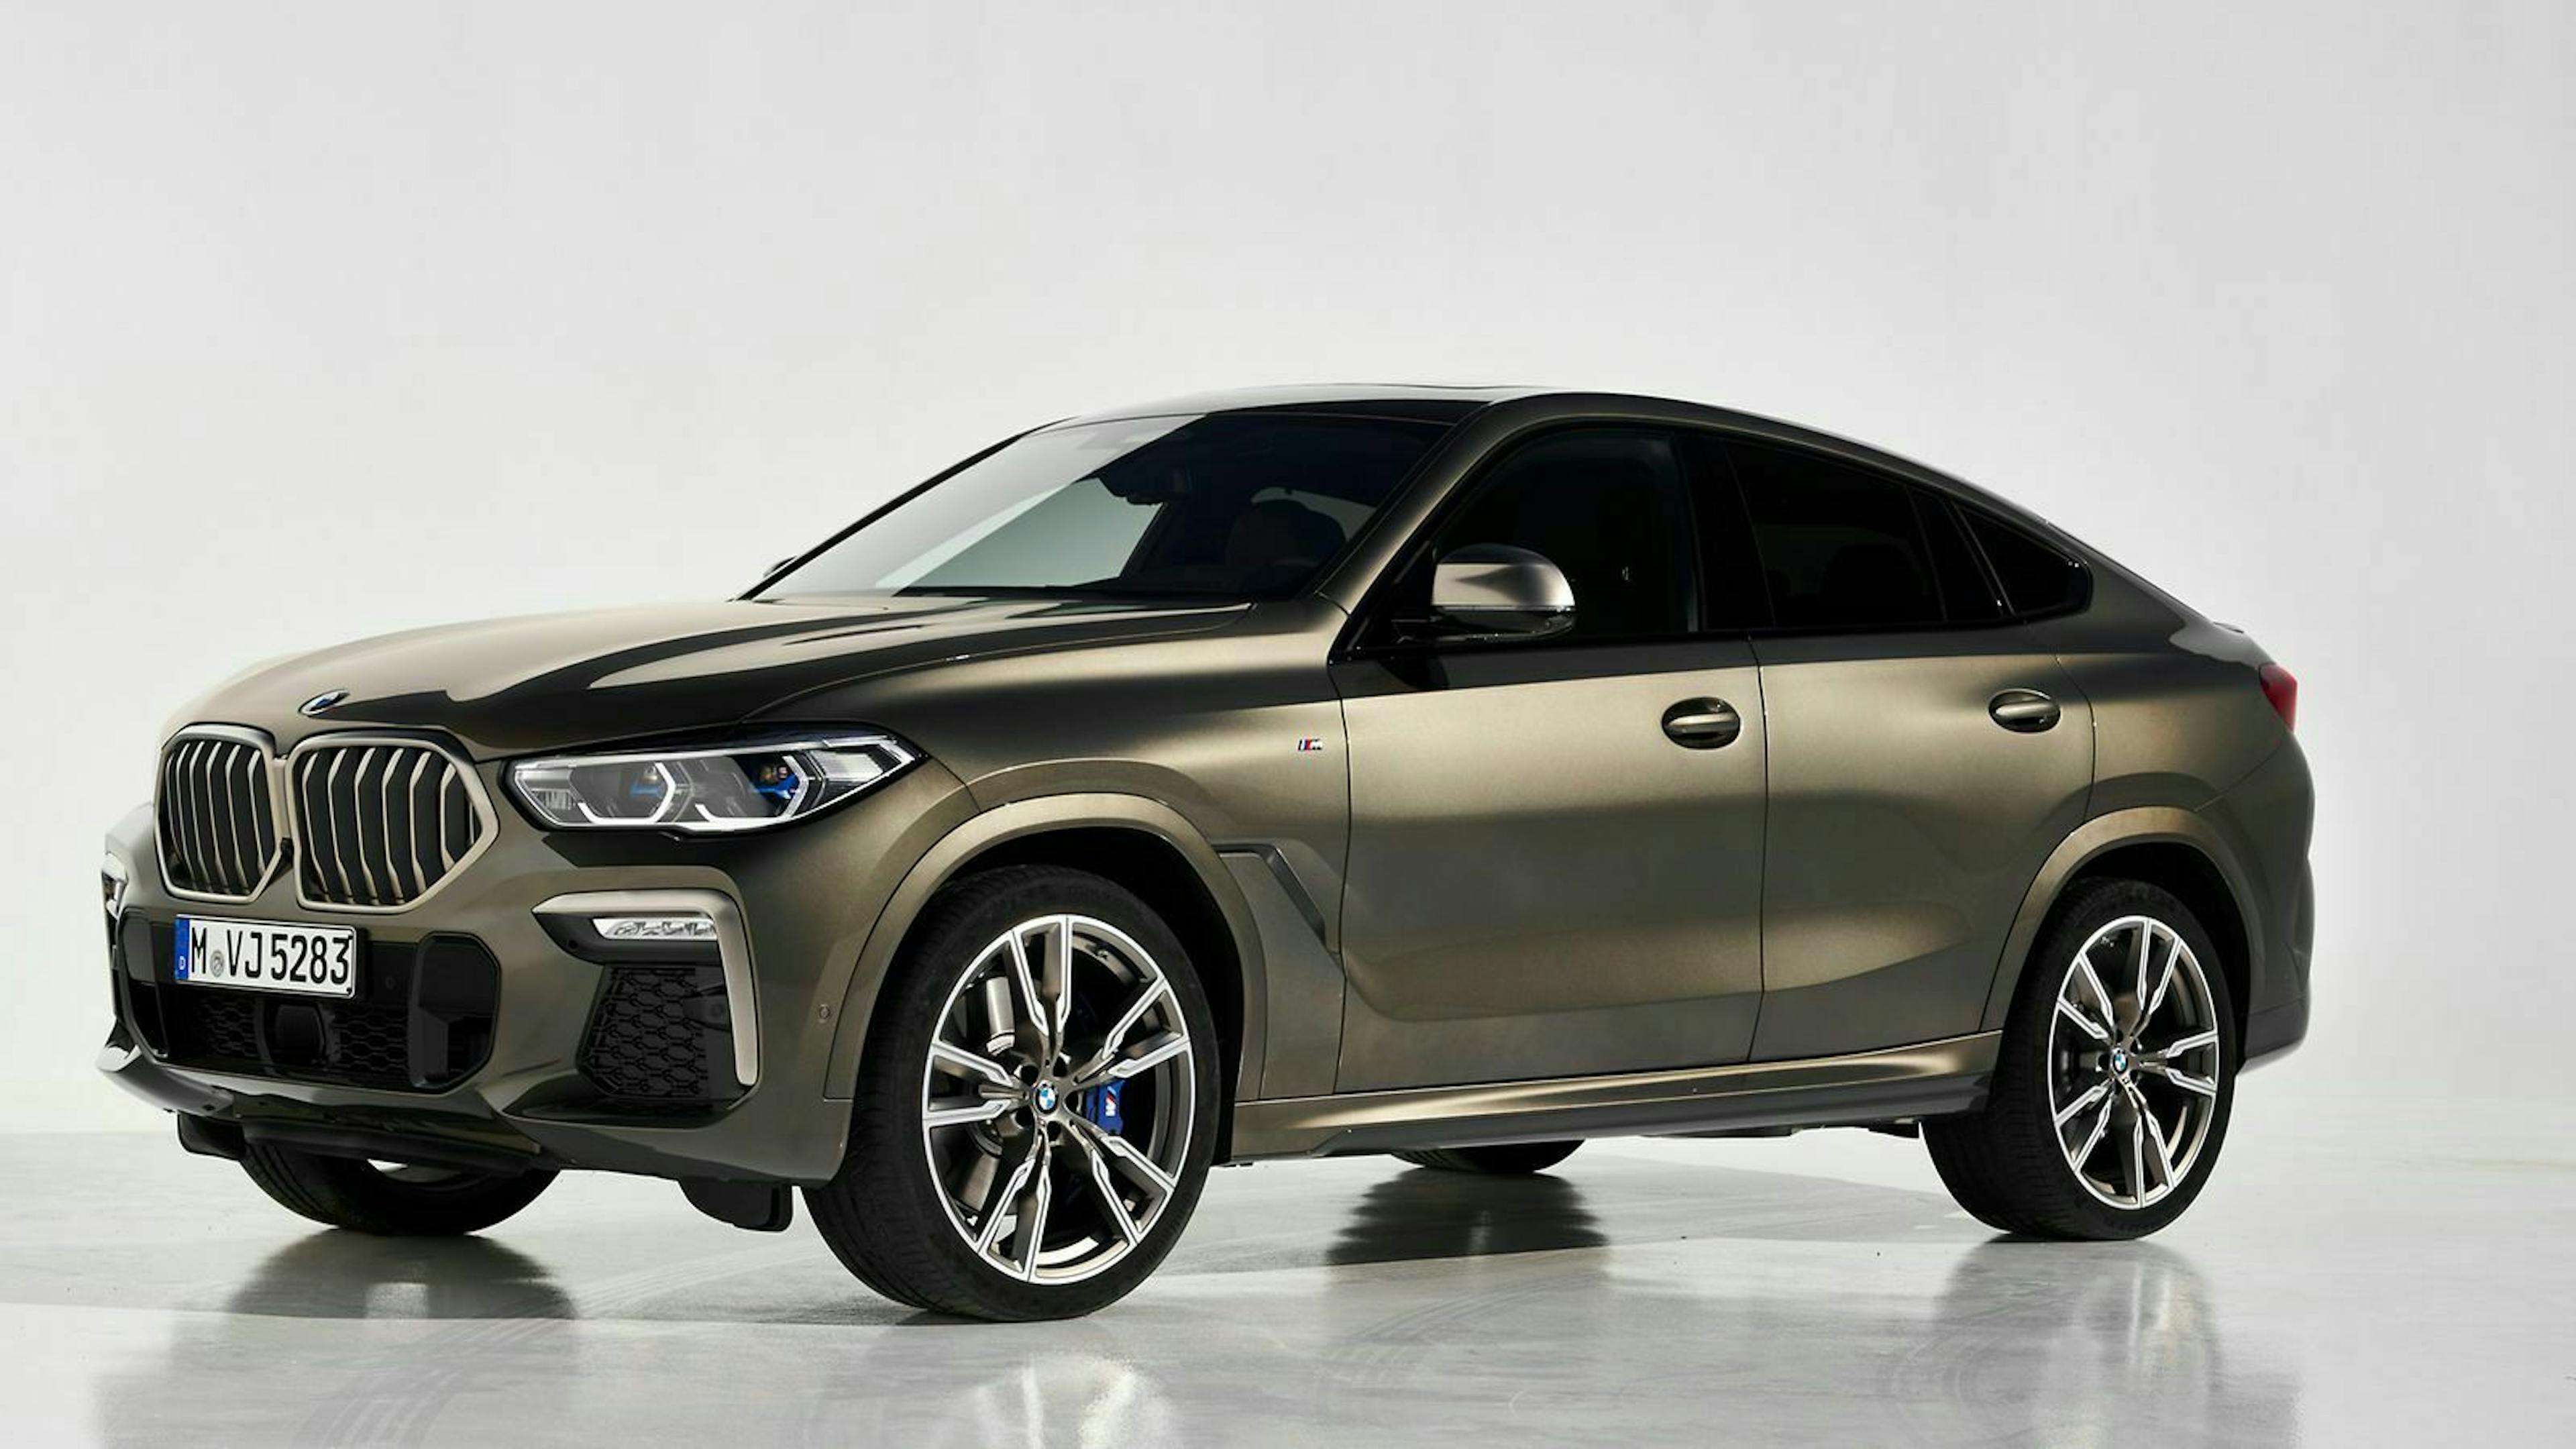 Der Vorderwagen des BMW X6 unterscheidet sich nicht vom X5, die niedrigere Dachlinie ändert jedoch den Charakter